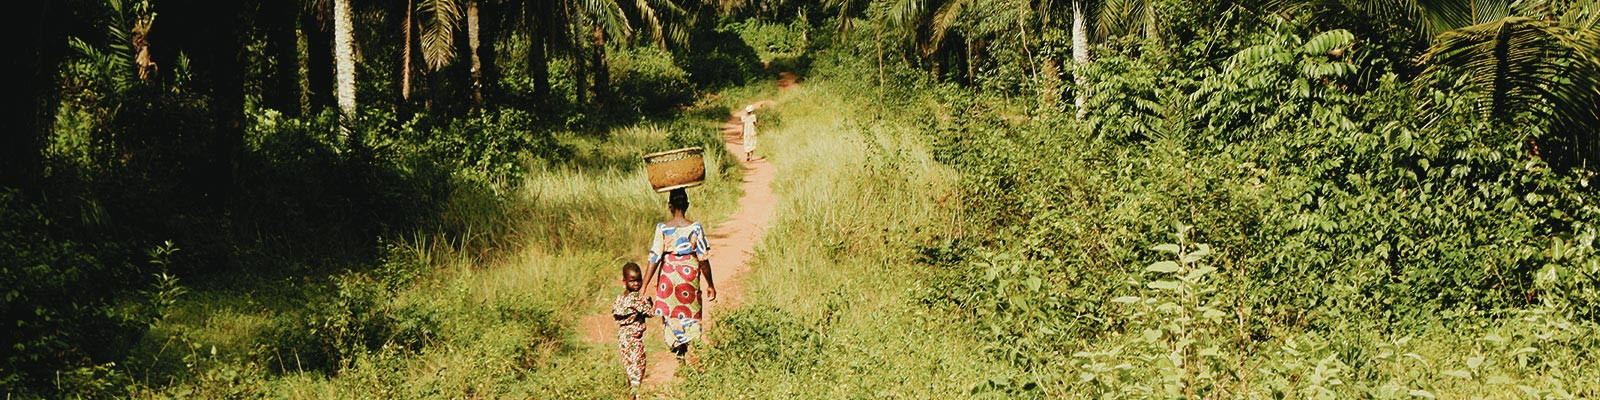 Voyage Bénin solidaire, responsable, tourisme durable - Découvrez l'authentique Bénin